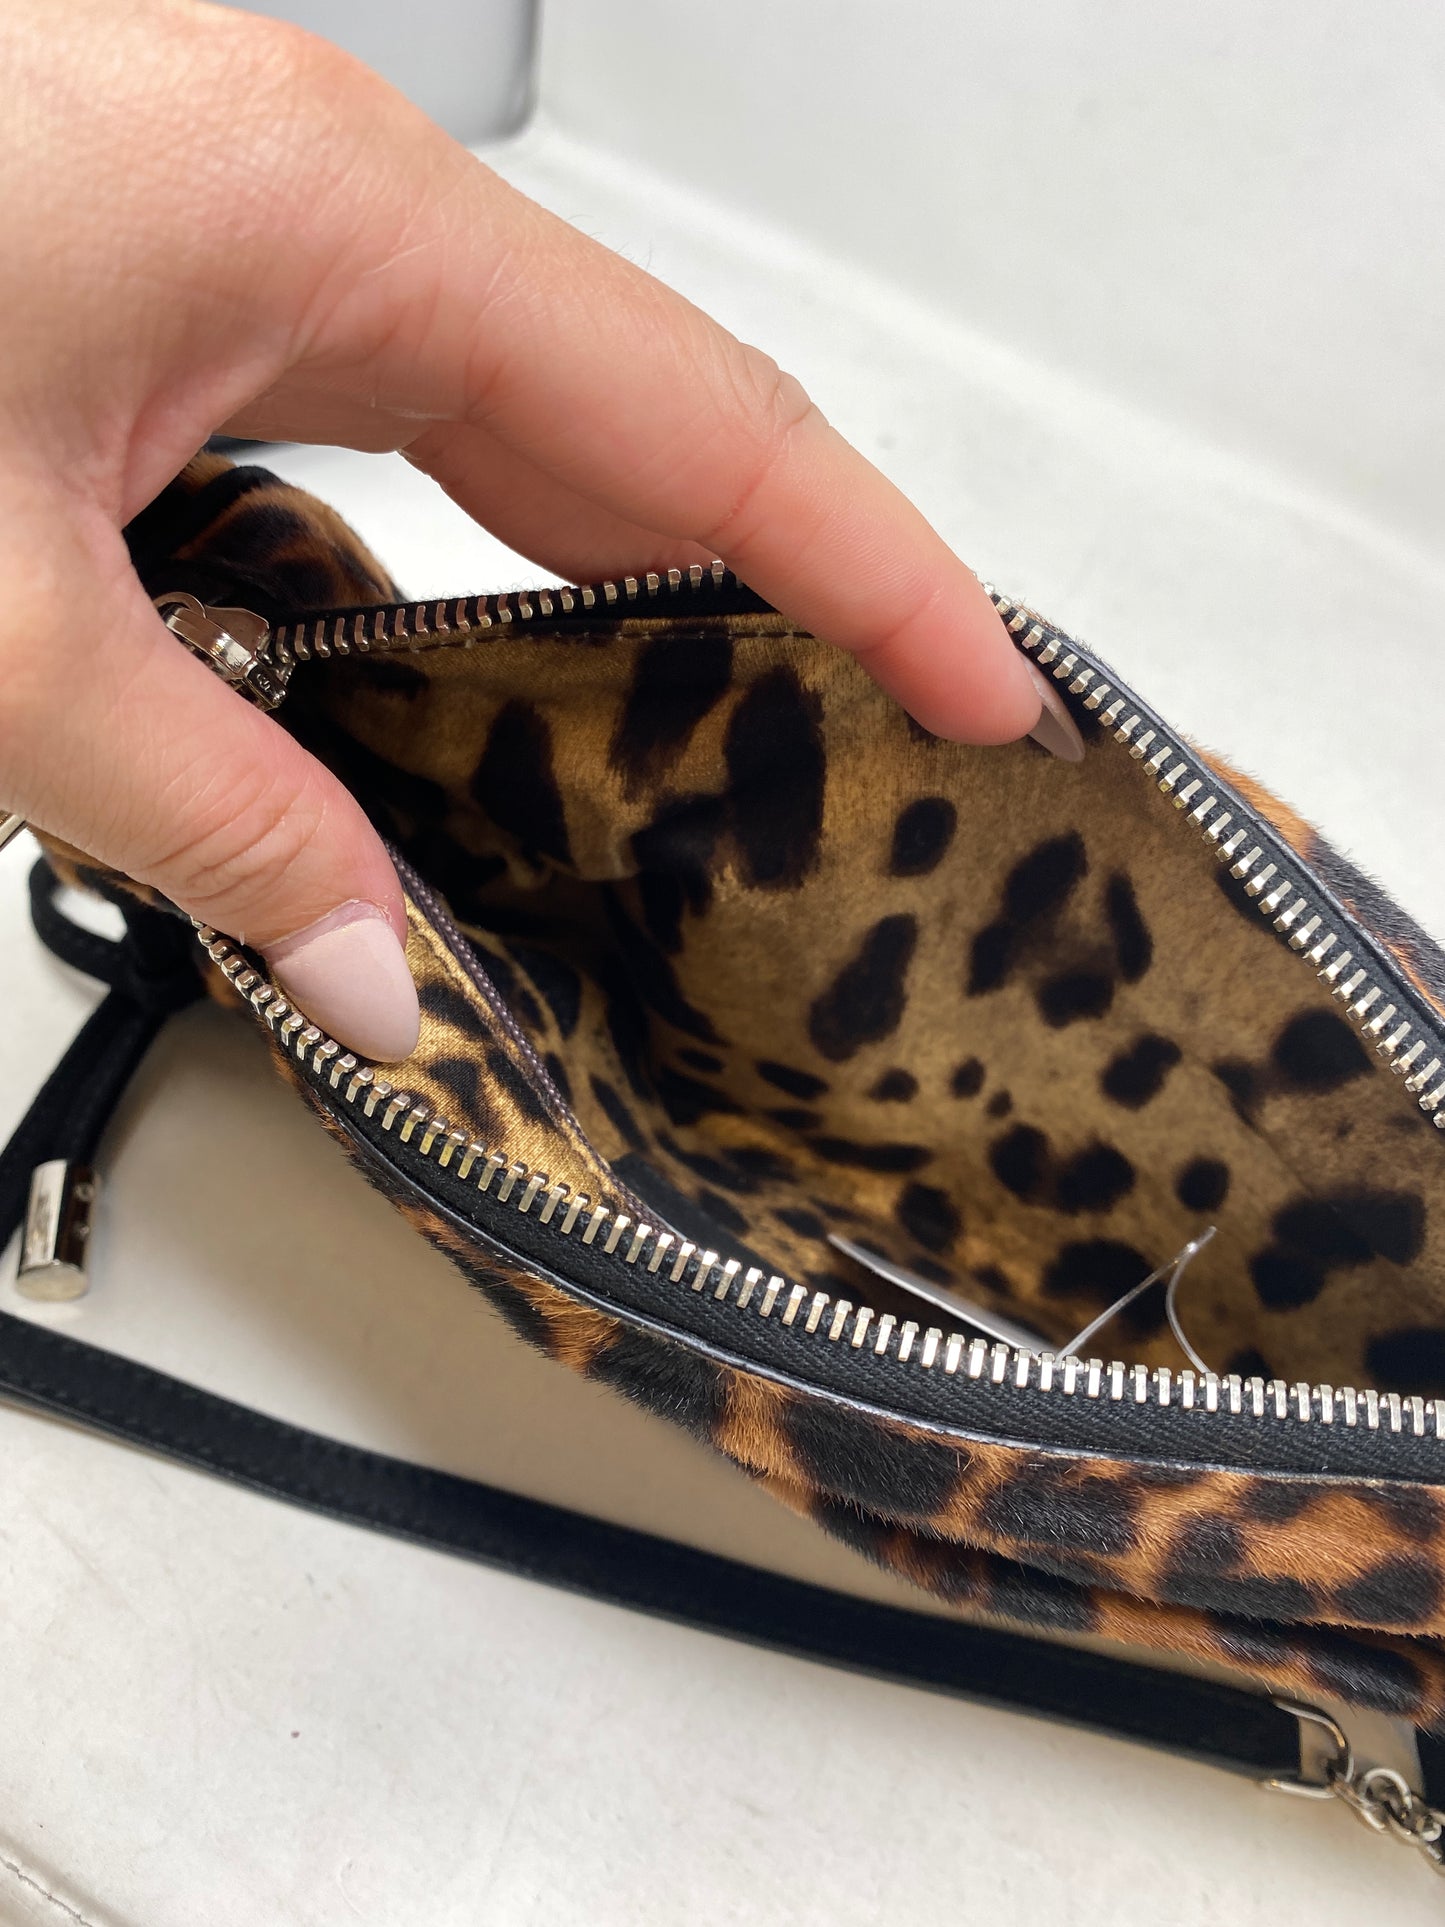 Dolce & Gabbana Leopard Shoulder Bag